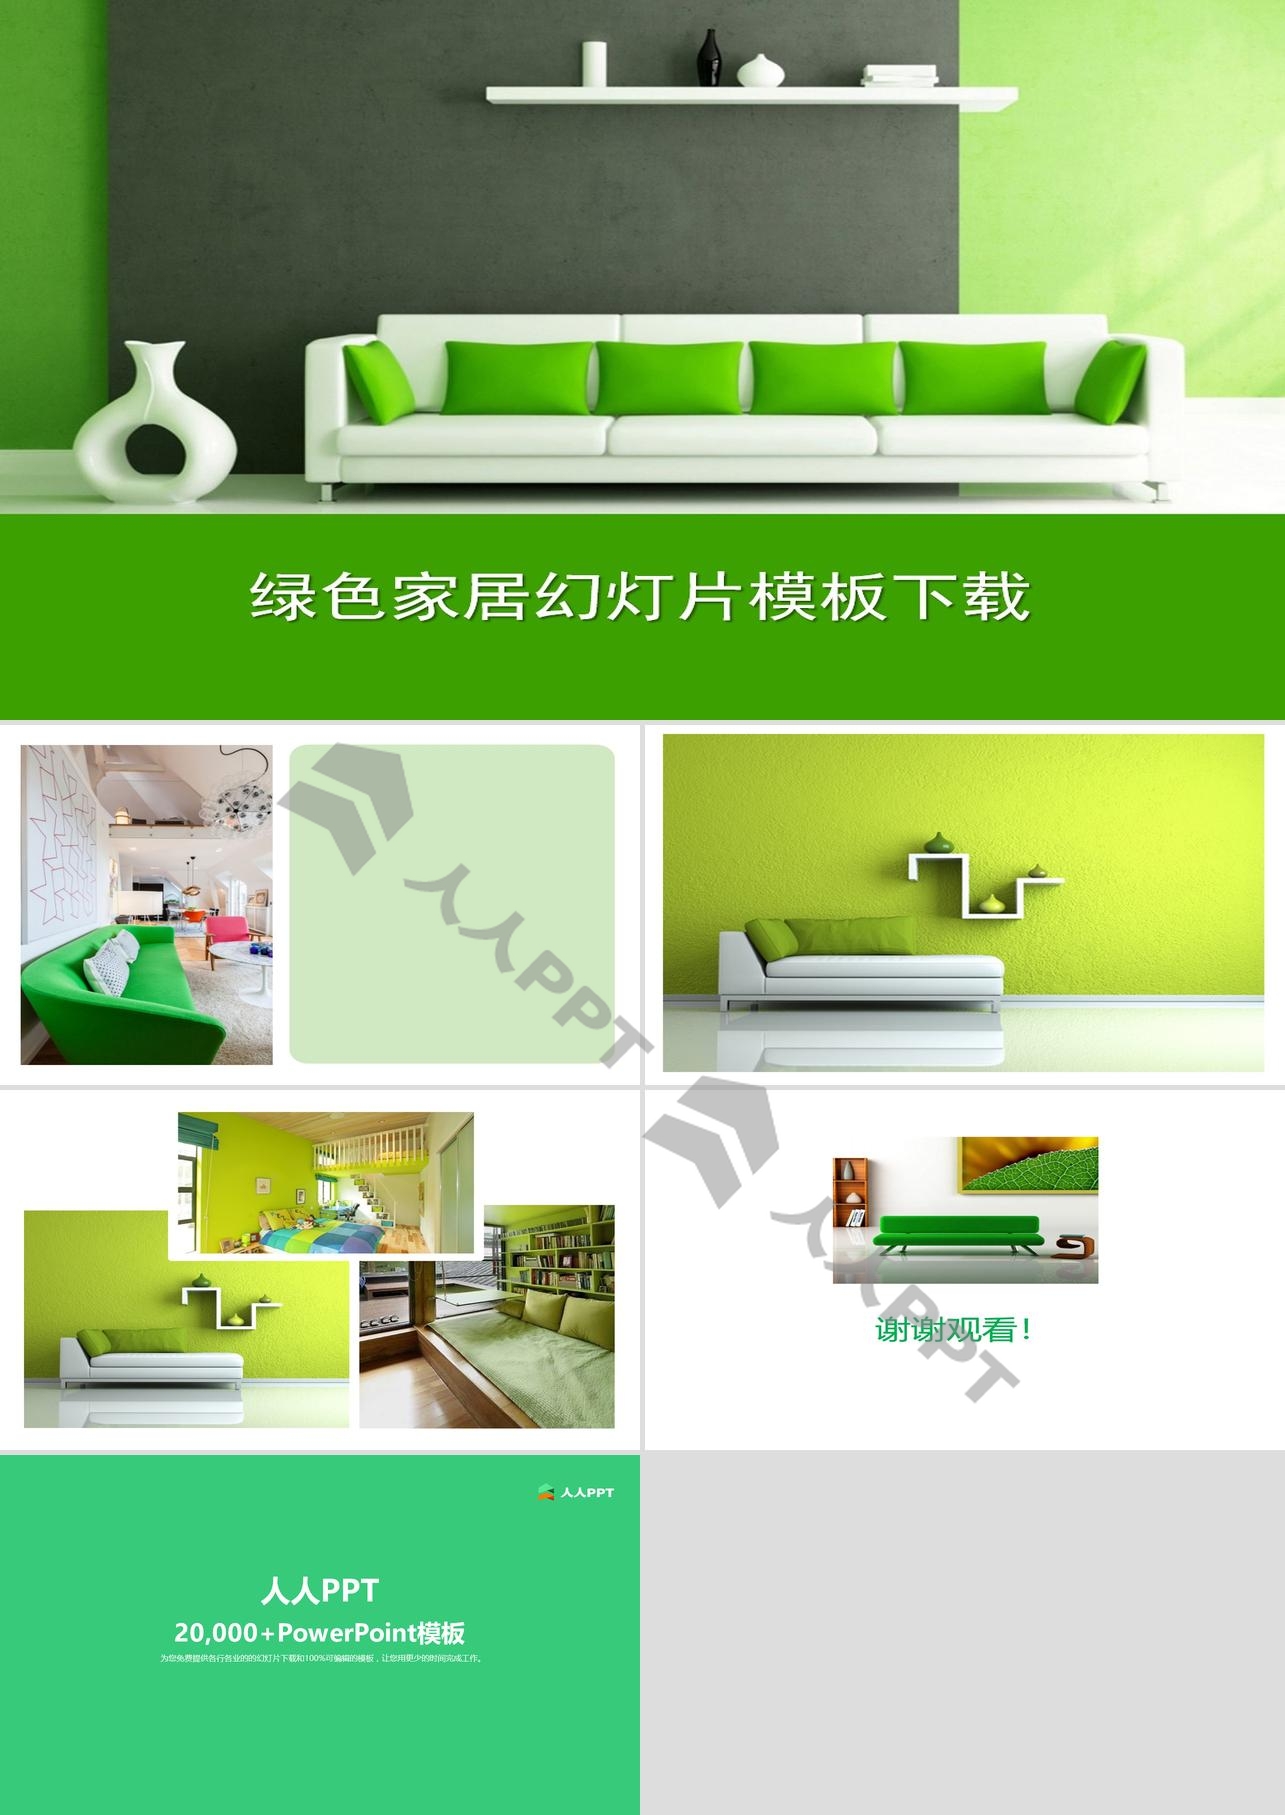 清新绿色家具背景的家居装修幻灯片模板长图